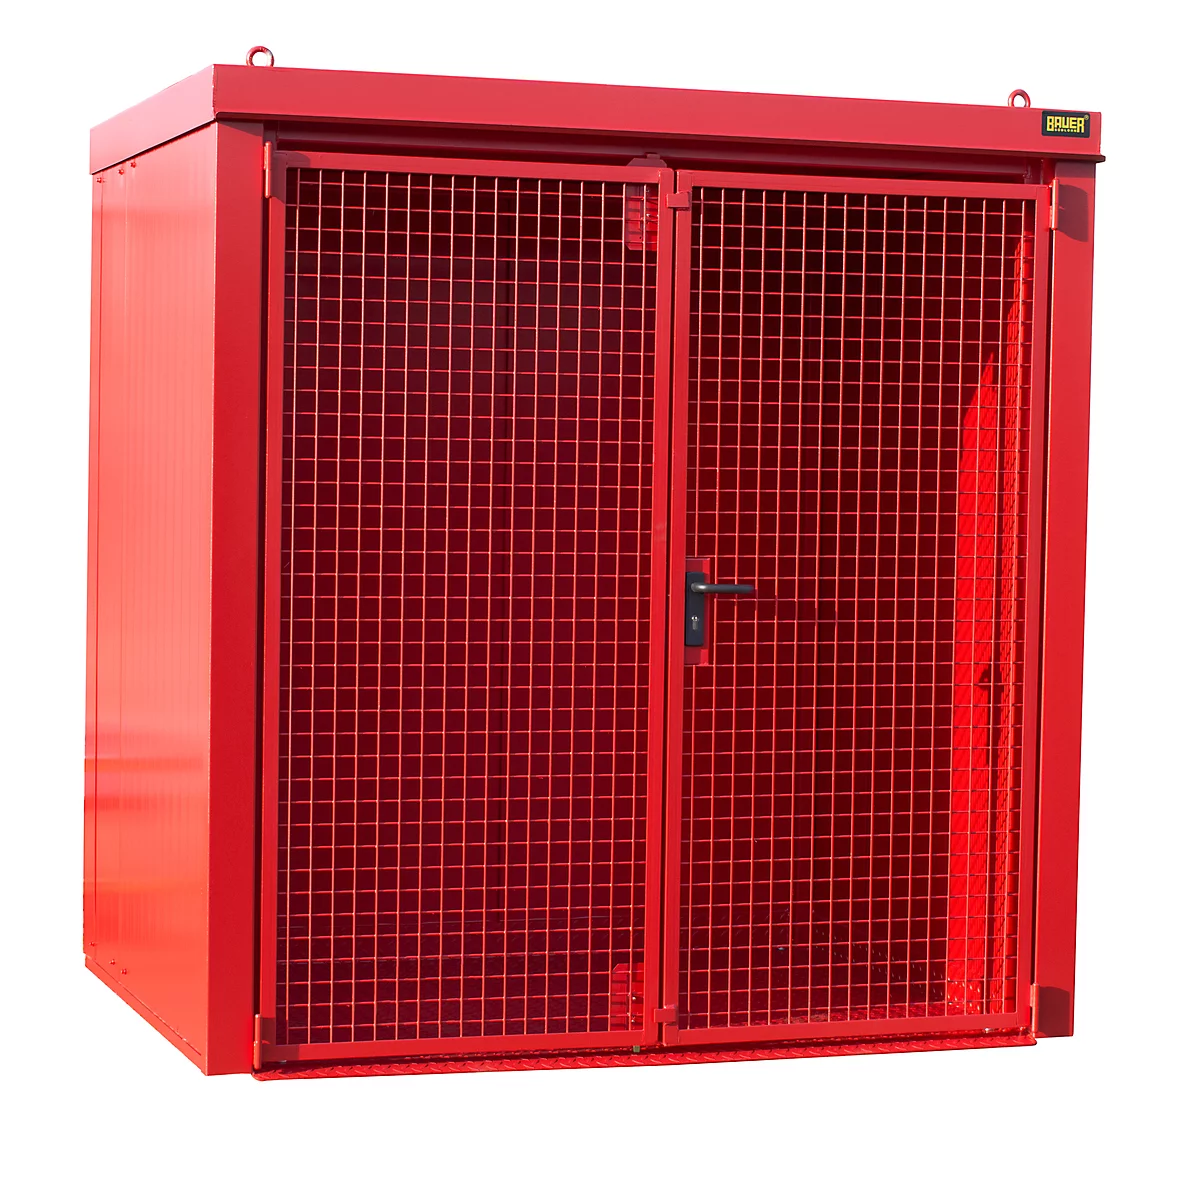 Contenedor de bombonas de gas BAUER GFC-B M2, An 1570 x P 2125 x Al 2265, para 35 bombonas de gas, resistente al fuego, con cerradura, rojo